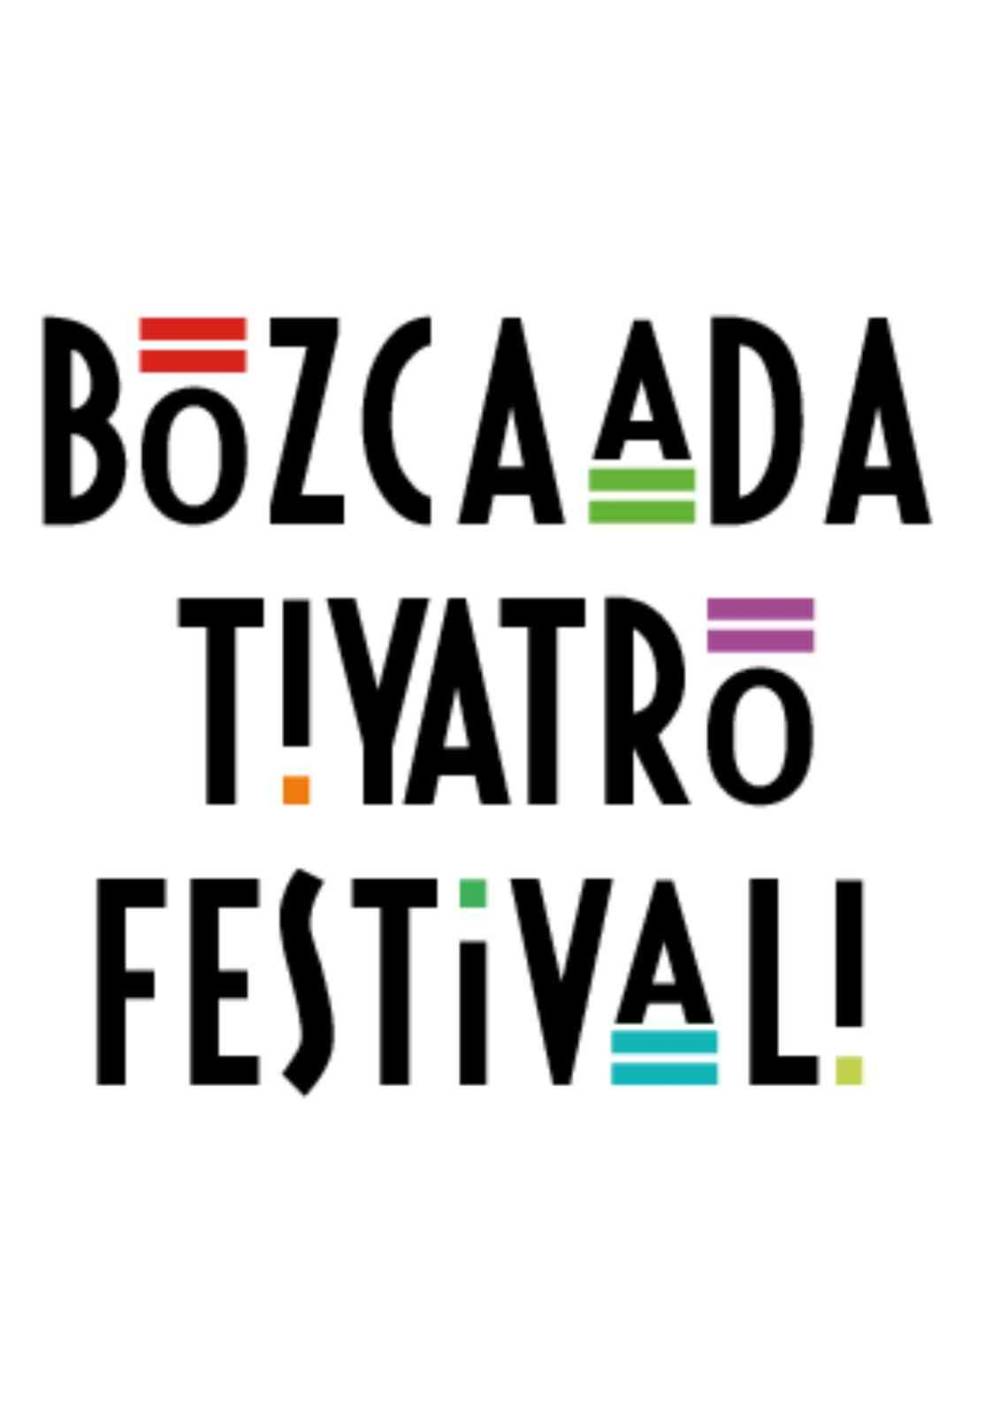 Aytemiz’den Bozcaada Tiyatro Festivali’ne destek
